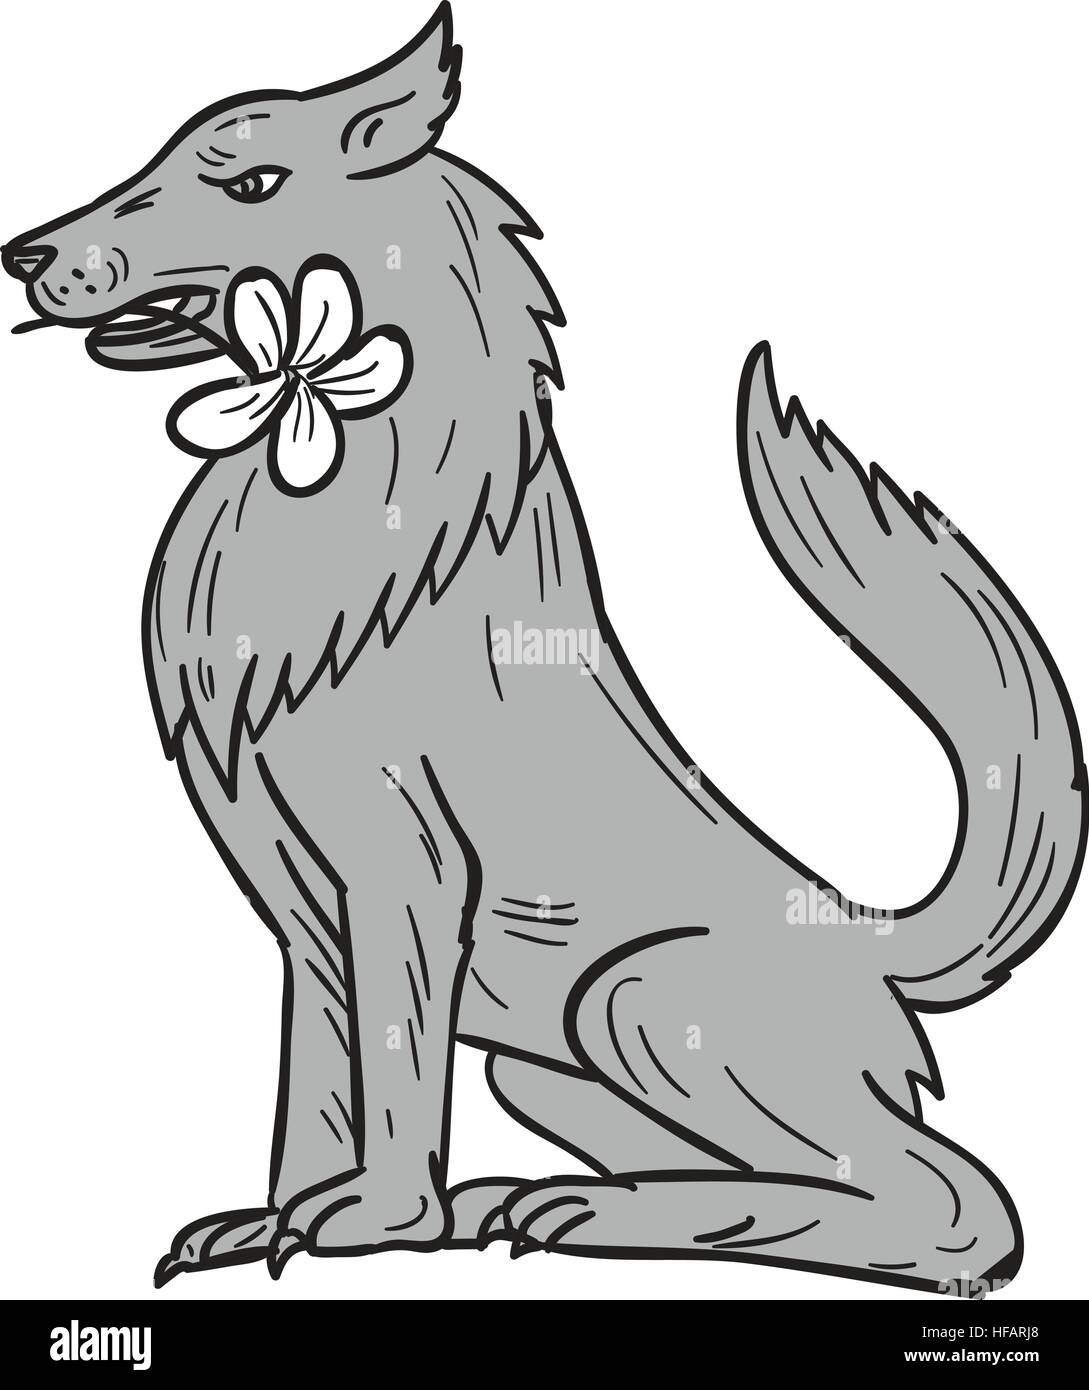 Style croquis dessin illustration d'un loup assis tenant un mordant plumeria flower dans la bouche vu du côté situé sur zone blanche isolée Illustration de Vecteur